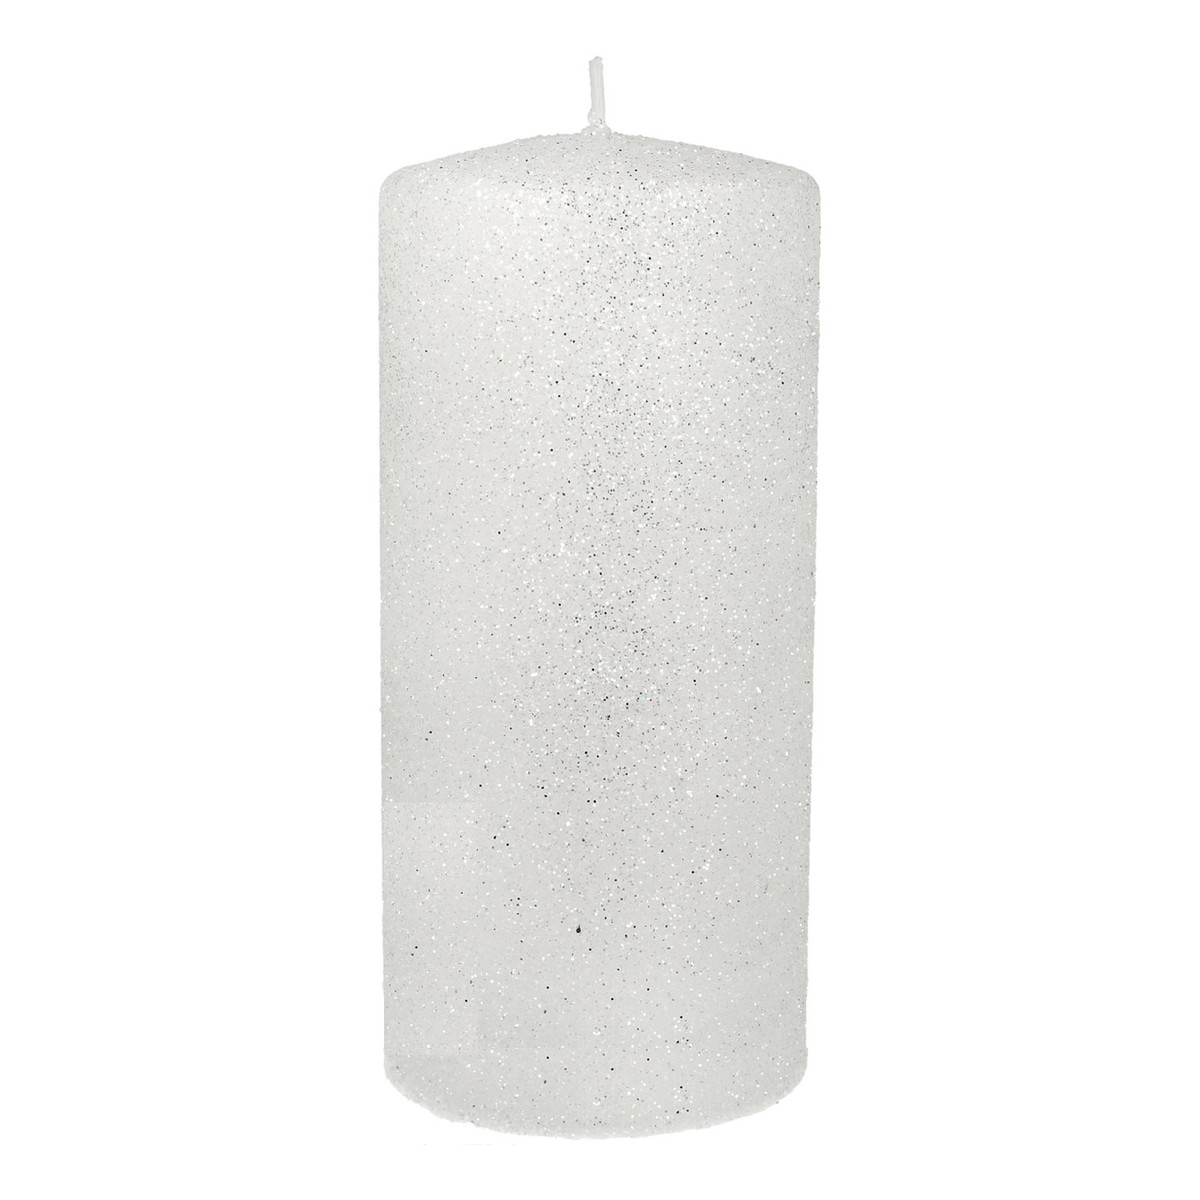 Artman Candles Świeca ozdobna Glamour biała - walec średni